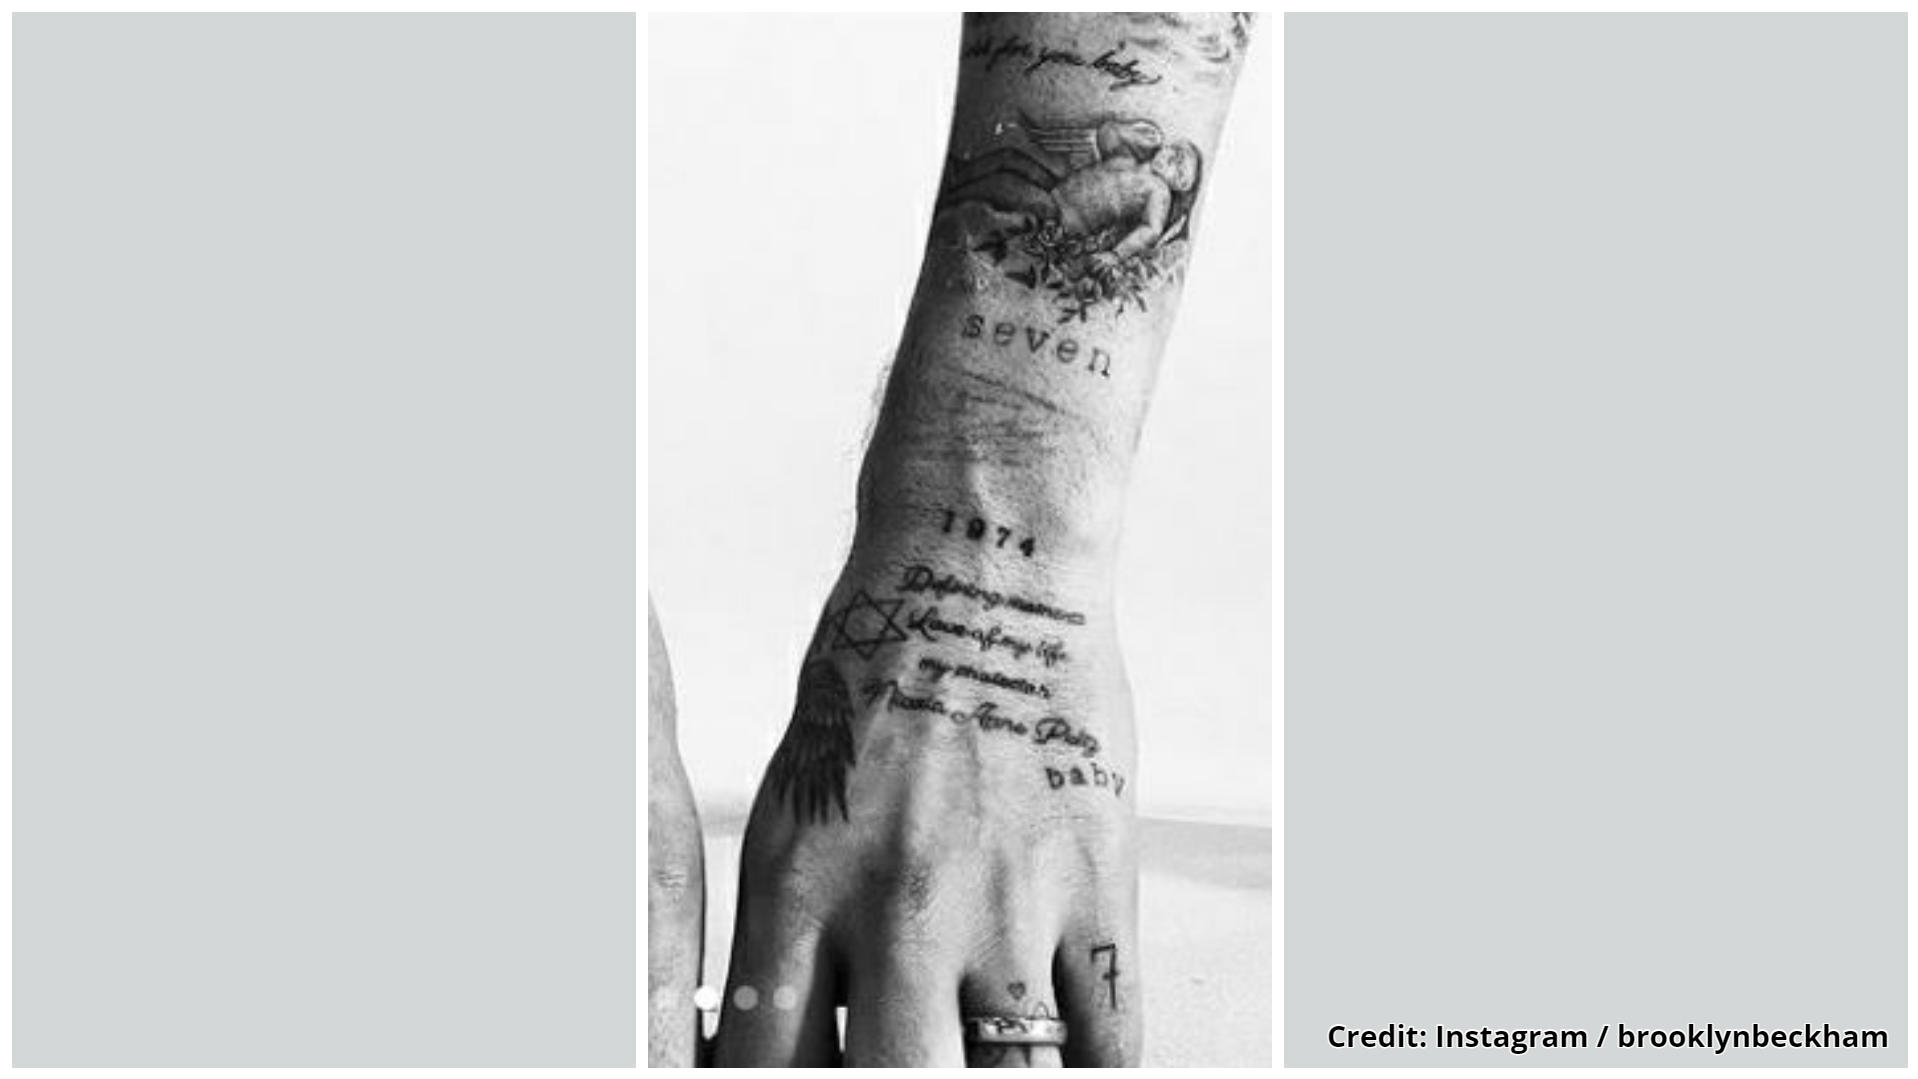 Brooklyn Beckhams neustes Tattoo auf der Hand.